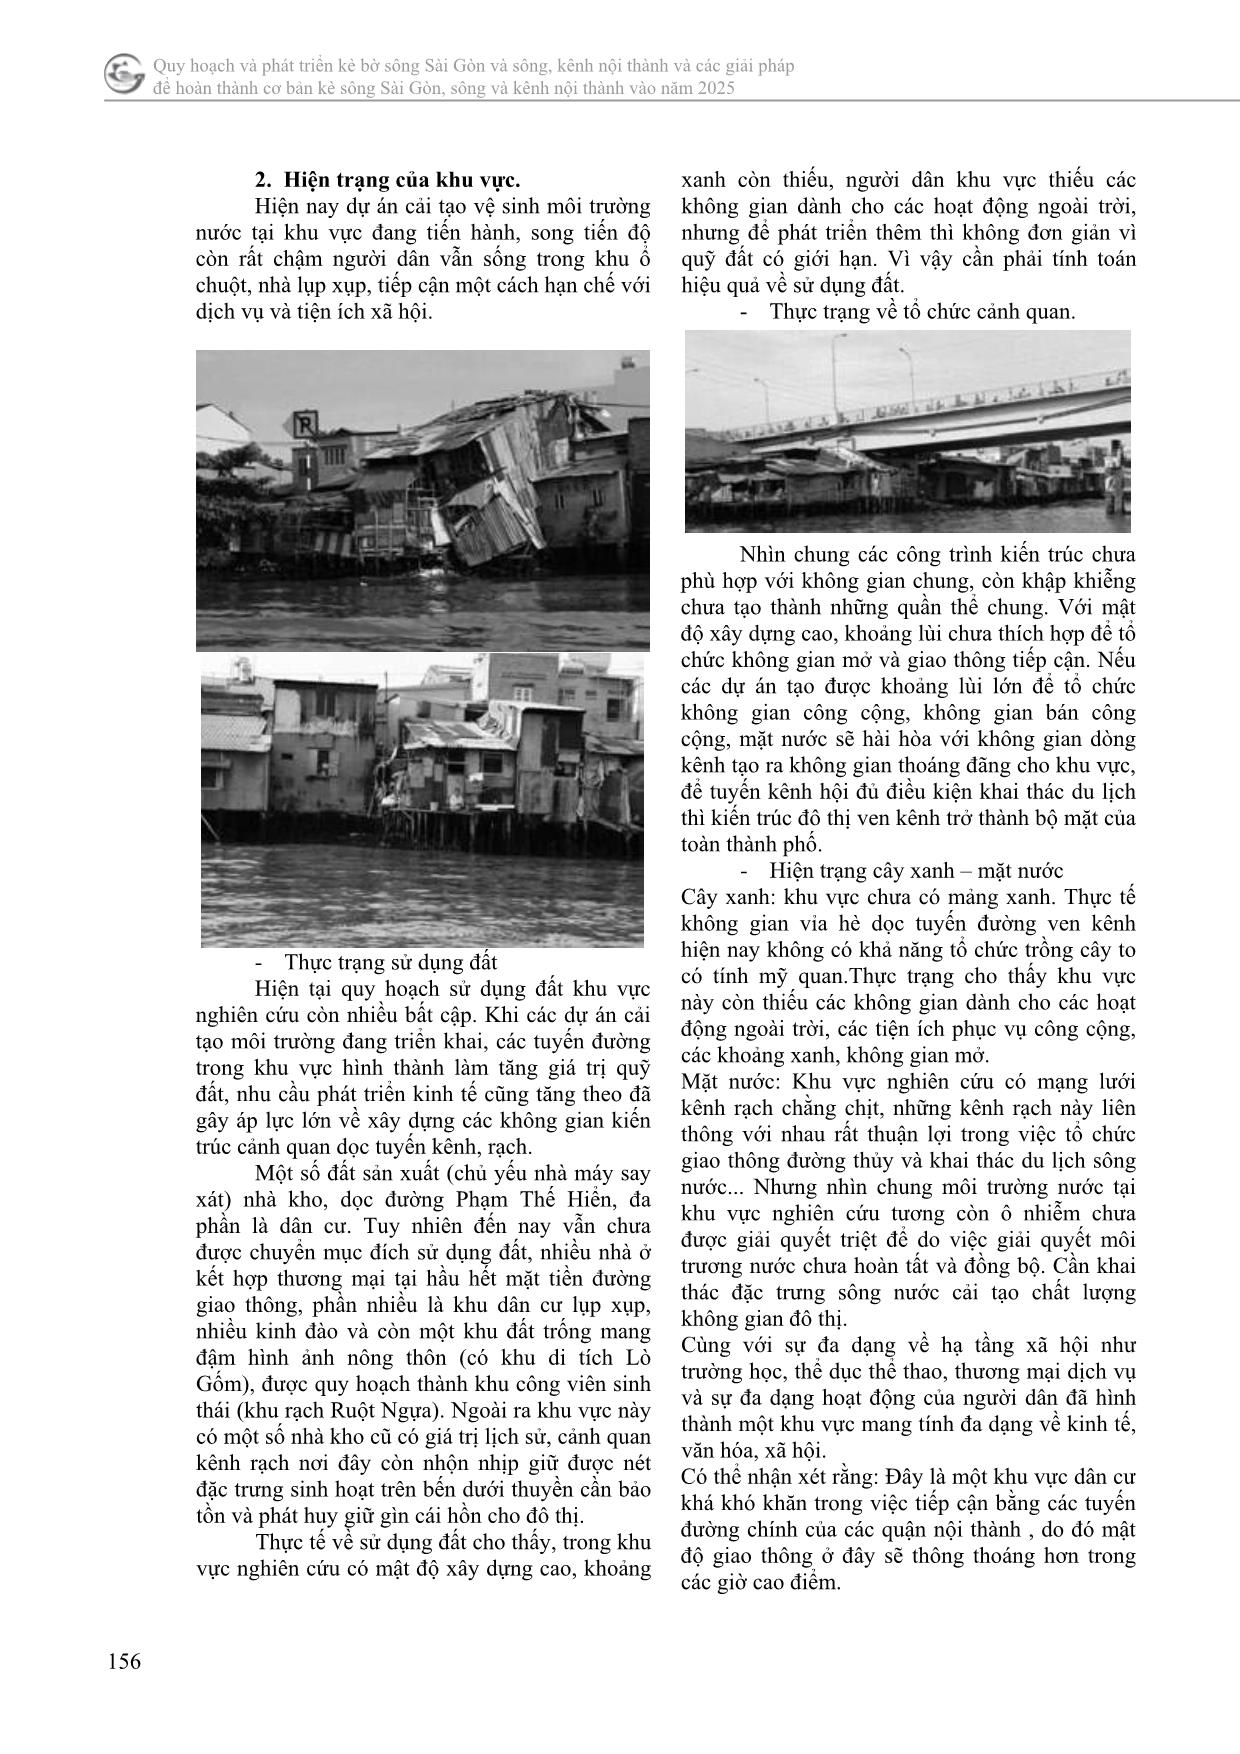 Không gian công cộng, không gian bán công cộng khu vực kênh đôi, quận 8, thành phố Hồ Chí Minh trang 3